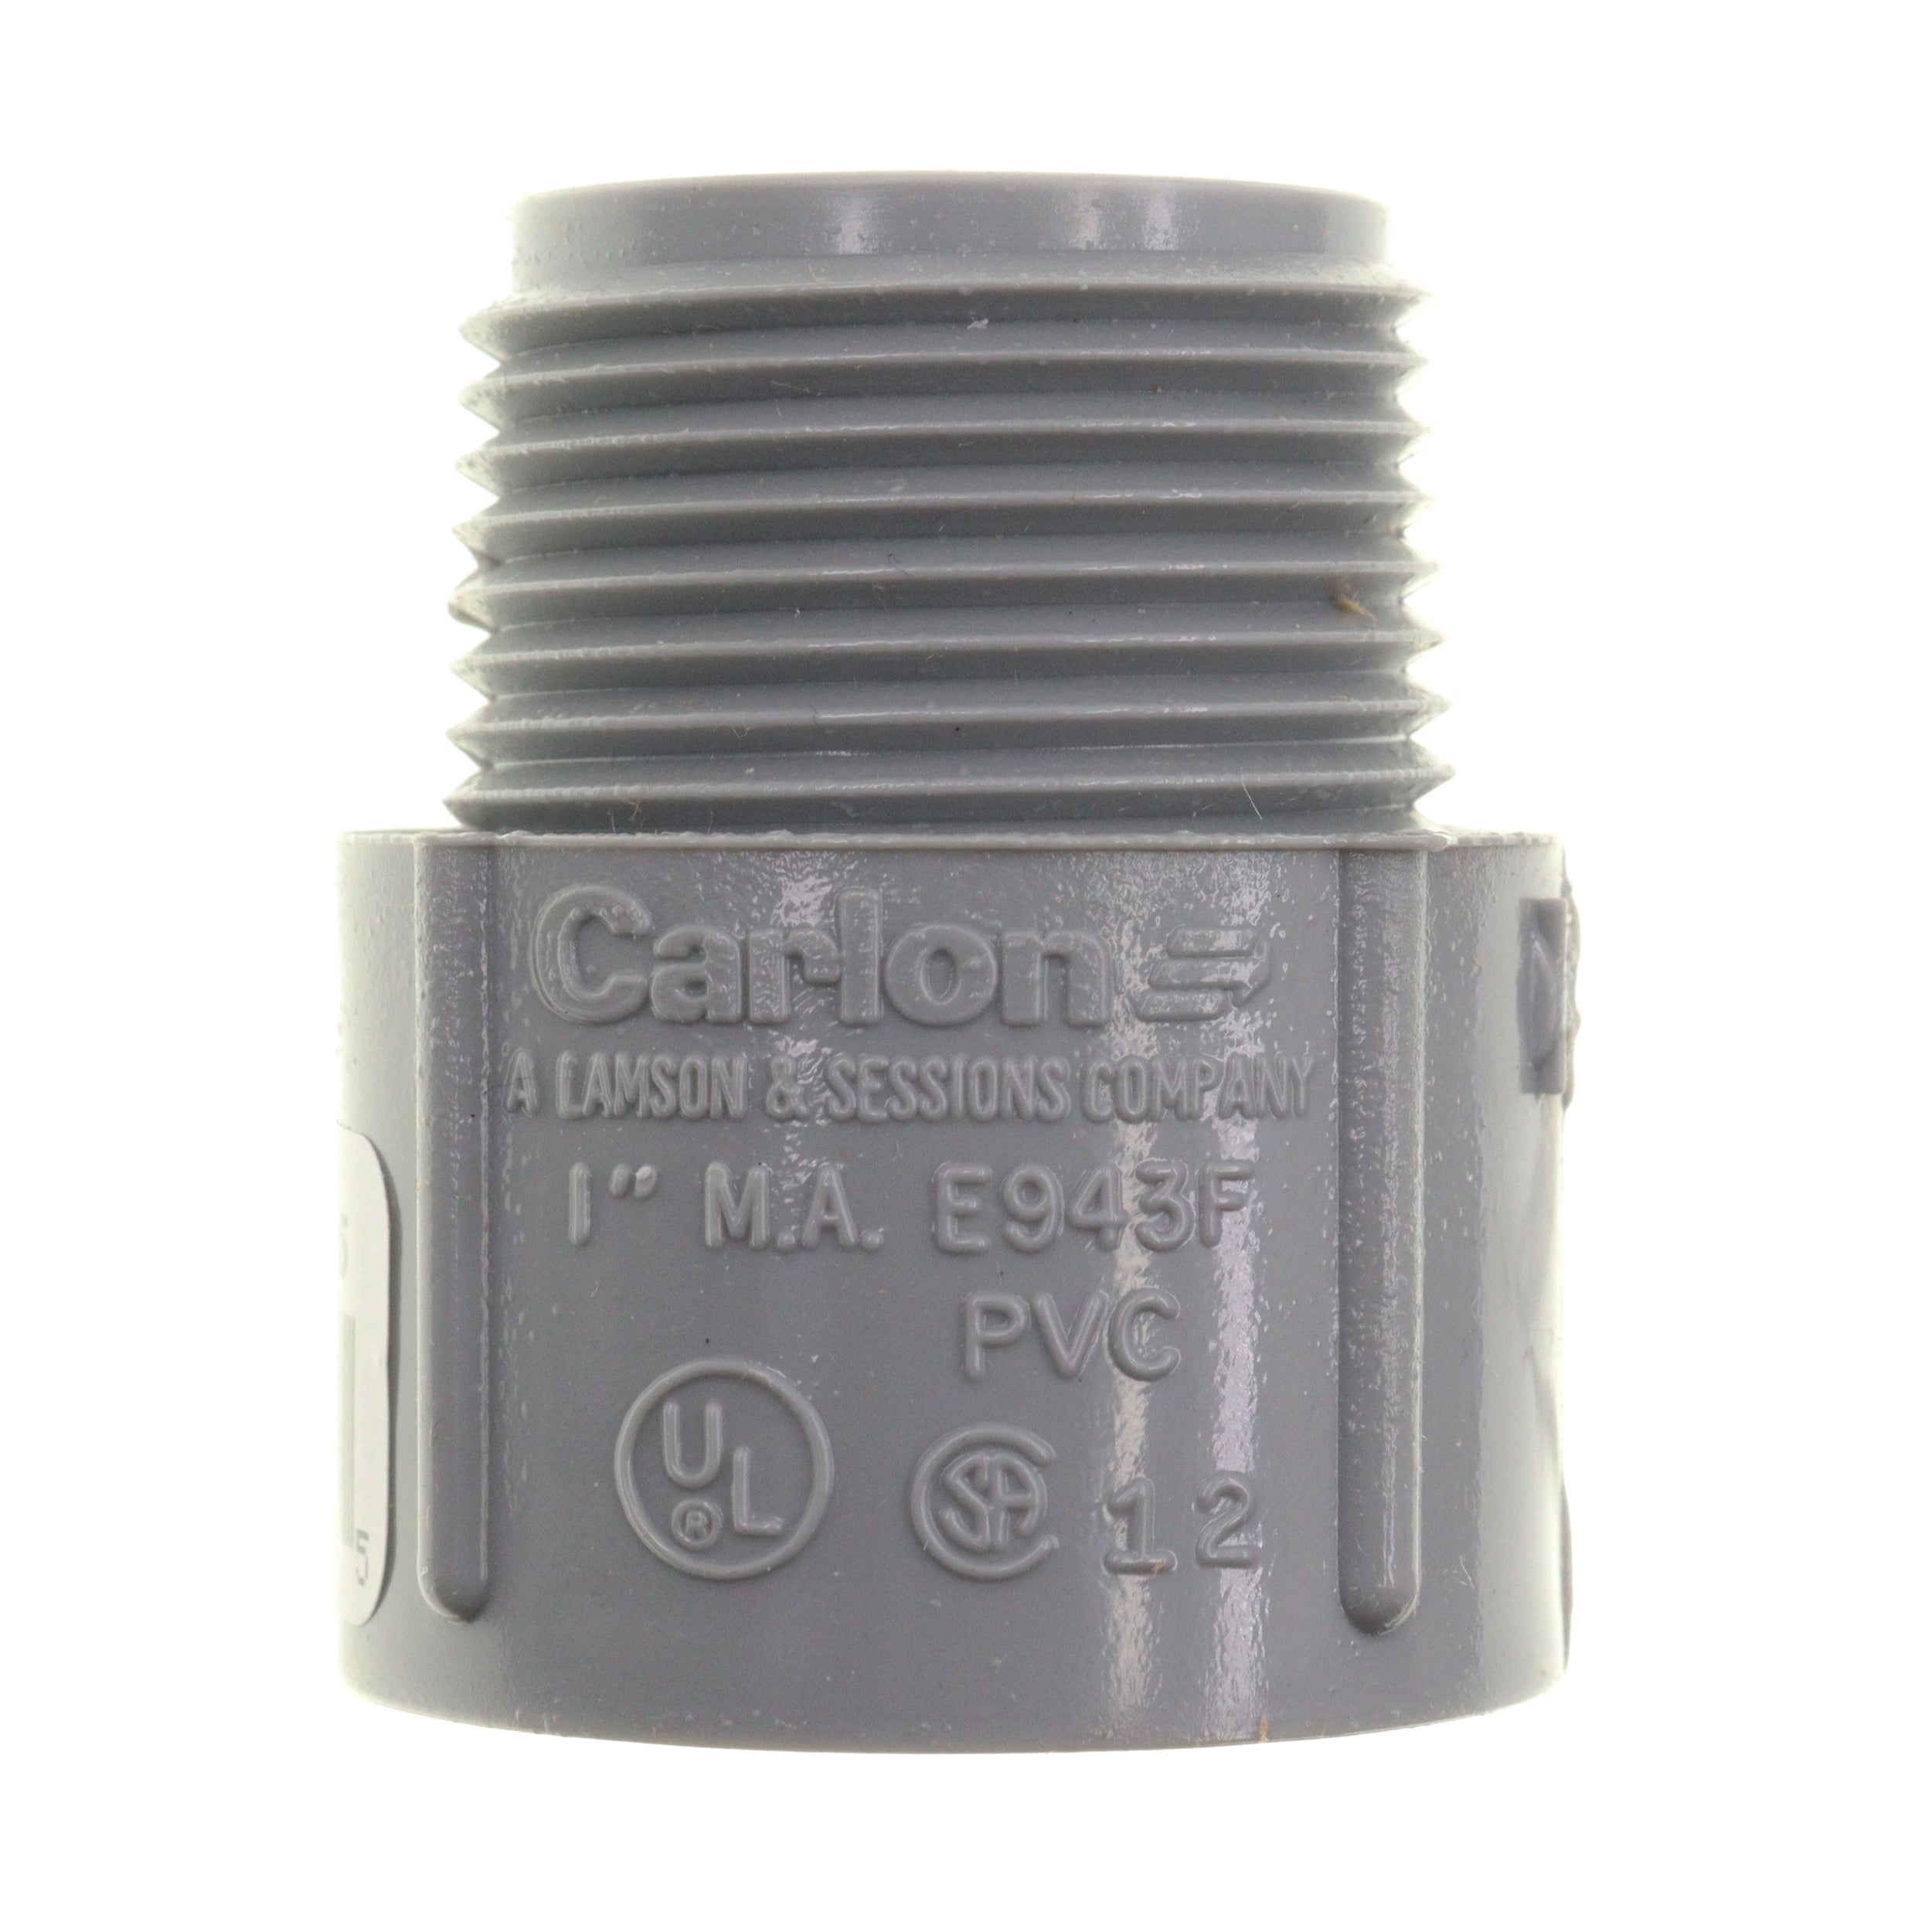 Carlon, CARLON E943F NON-METALLIC PVC THREADED MA MALE ADPATER, 1-INCH, GRAY